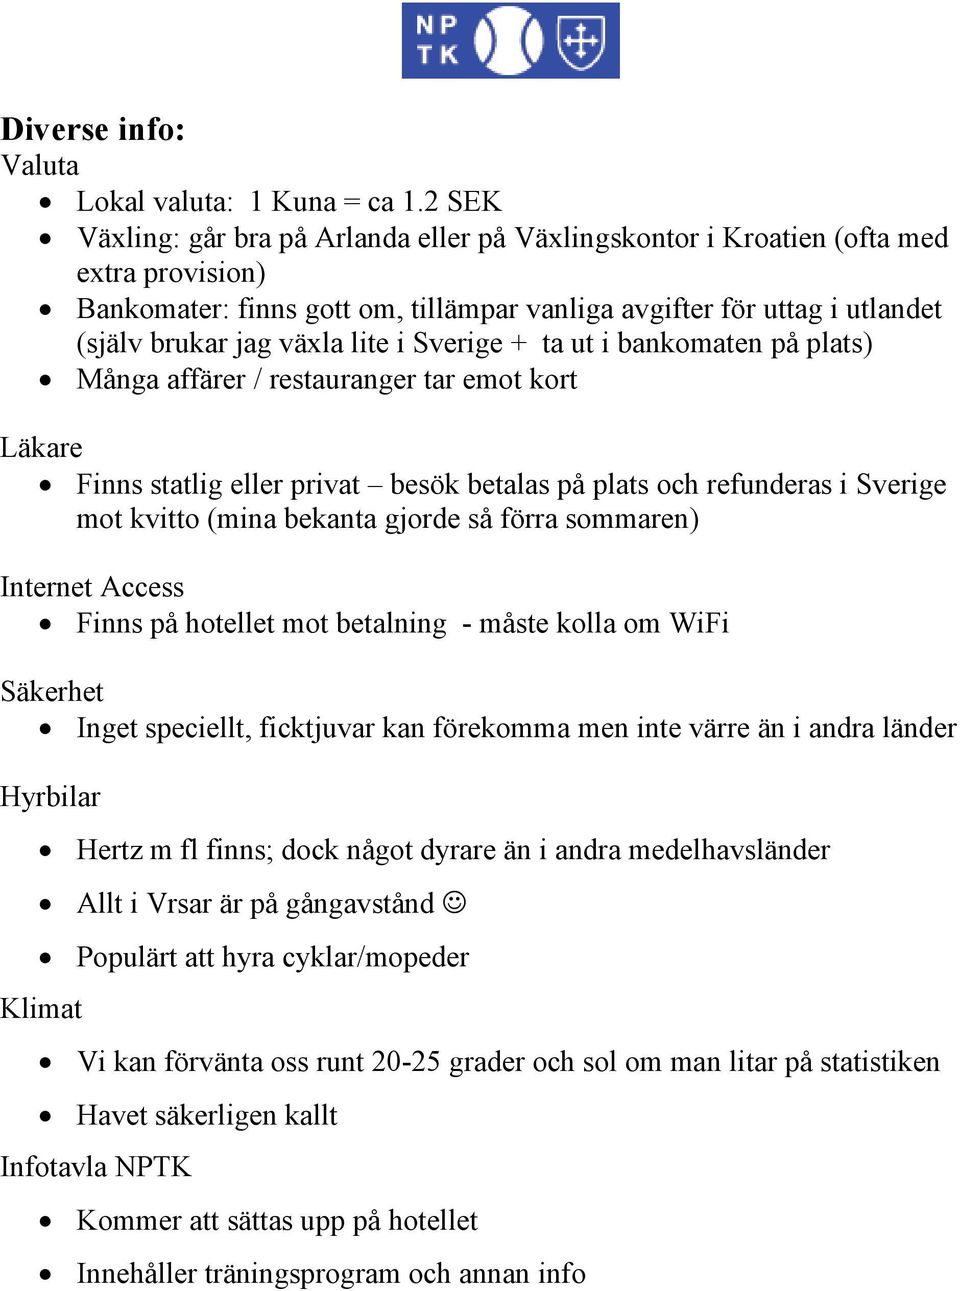 i Sverige + ta ut i bankomaten på plats) Många affärer / restauranger tar emot kort Läkare Finns statlig eller privat besök betalas på plats och refunderas i Sverige mot kvitto (mina bekanta gjorde